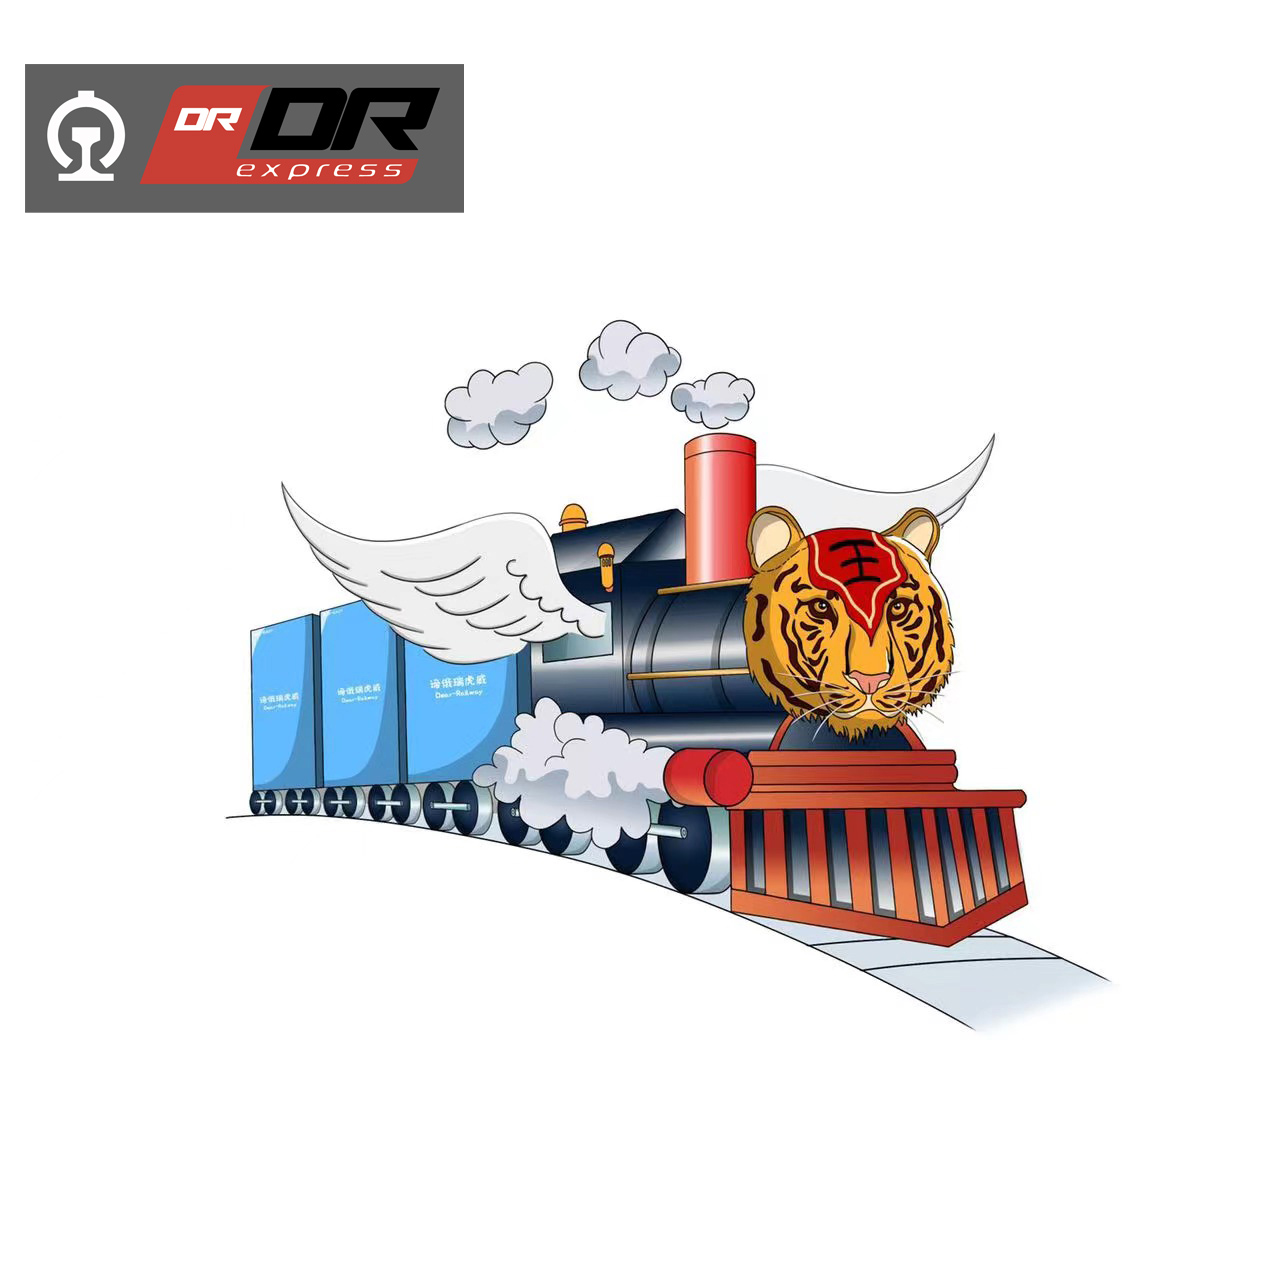 إطارات النقل بالسكك الحديدية من الصين إلى روسيا.